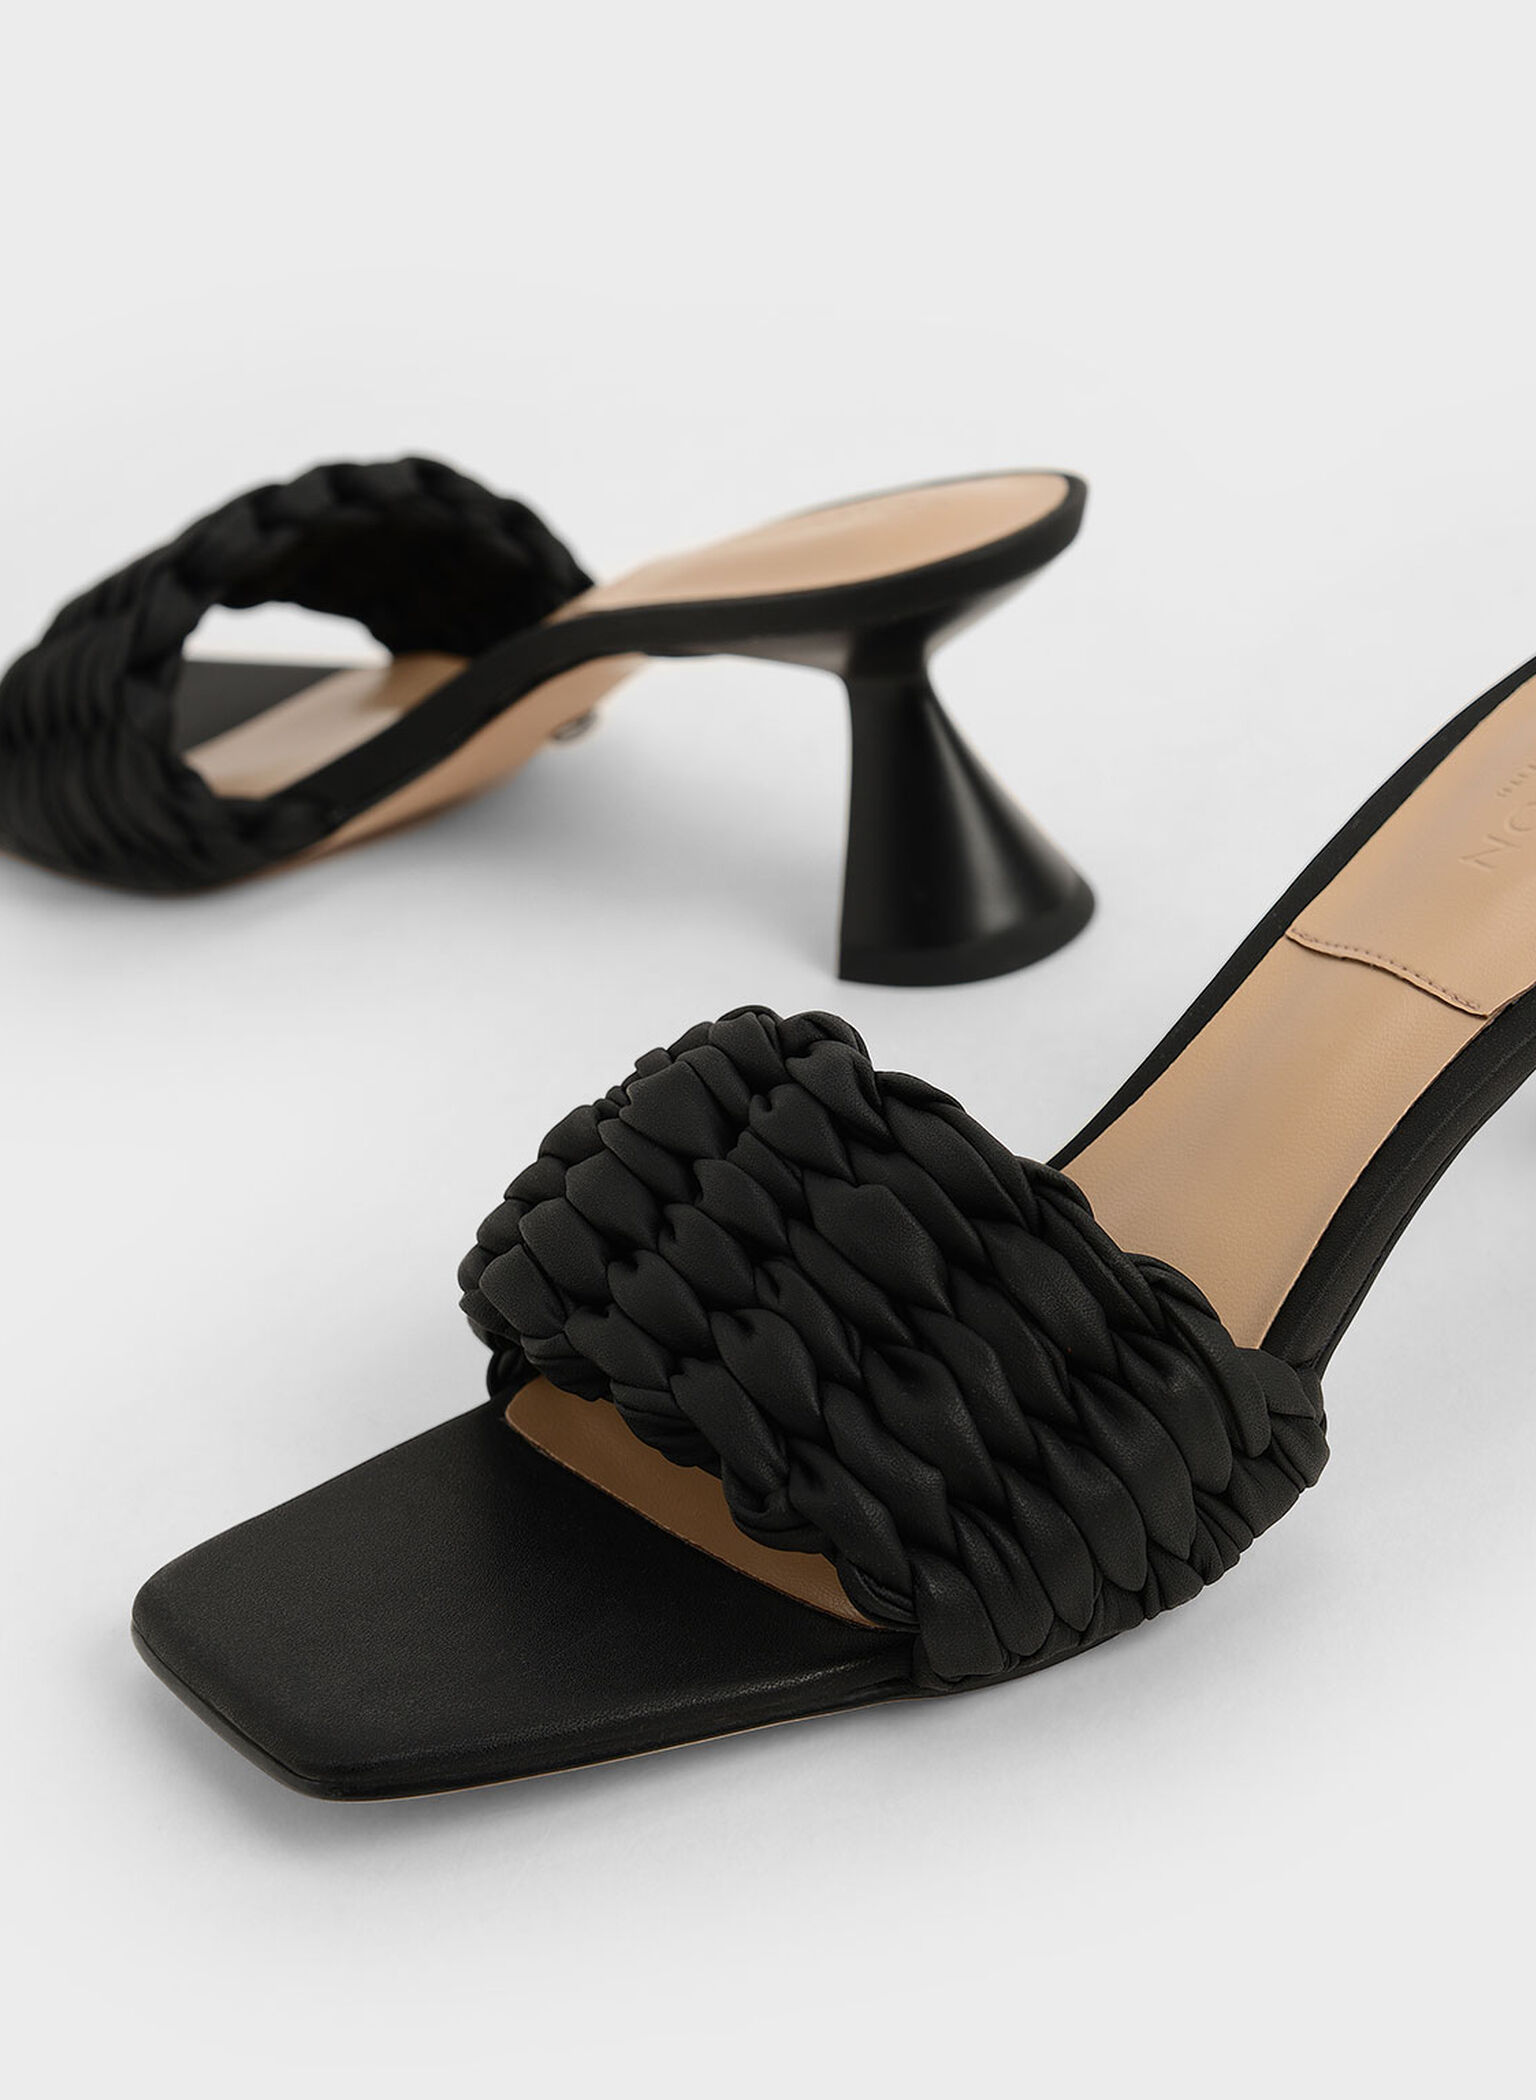 Pleated Sculptural Heel Sandals, Black, hi-res